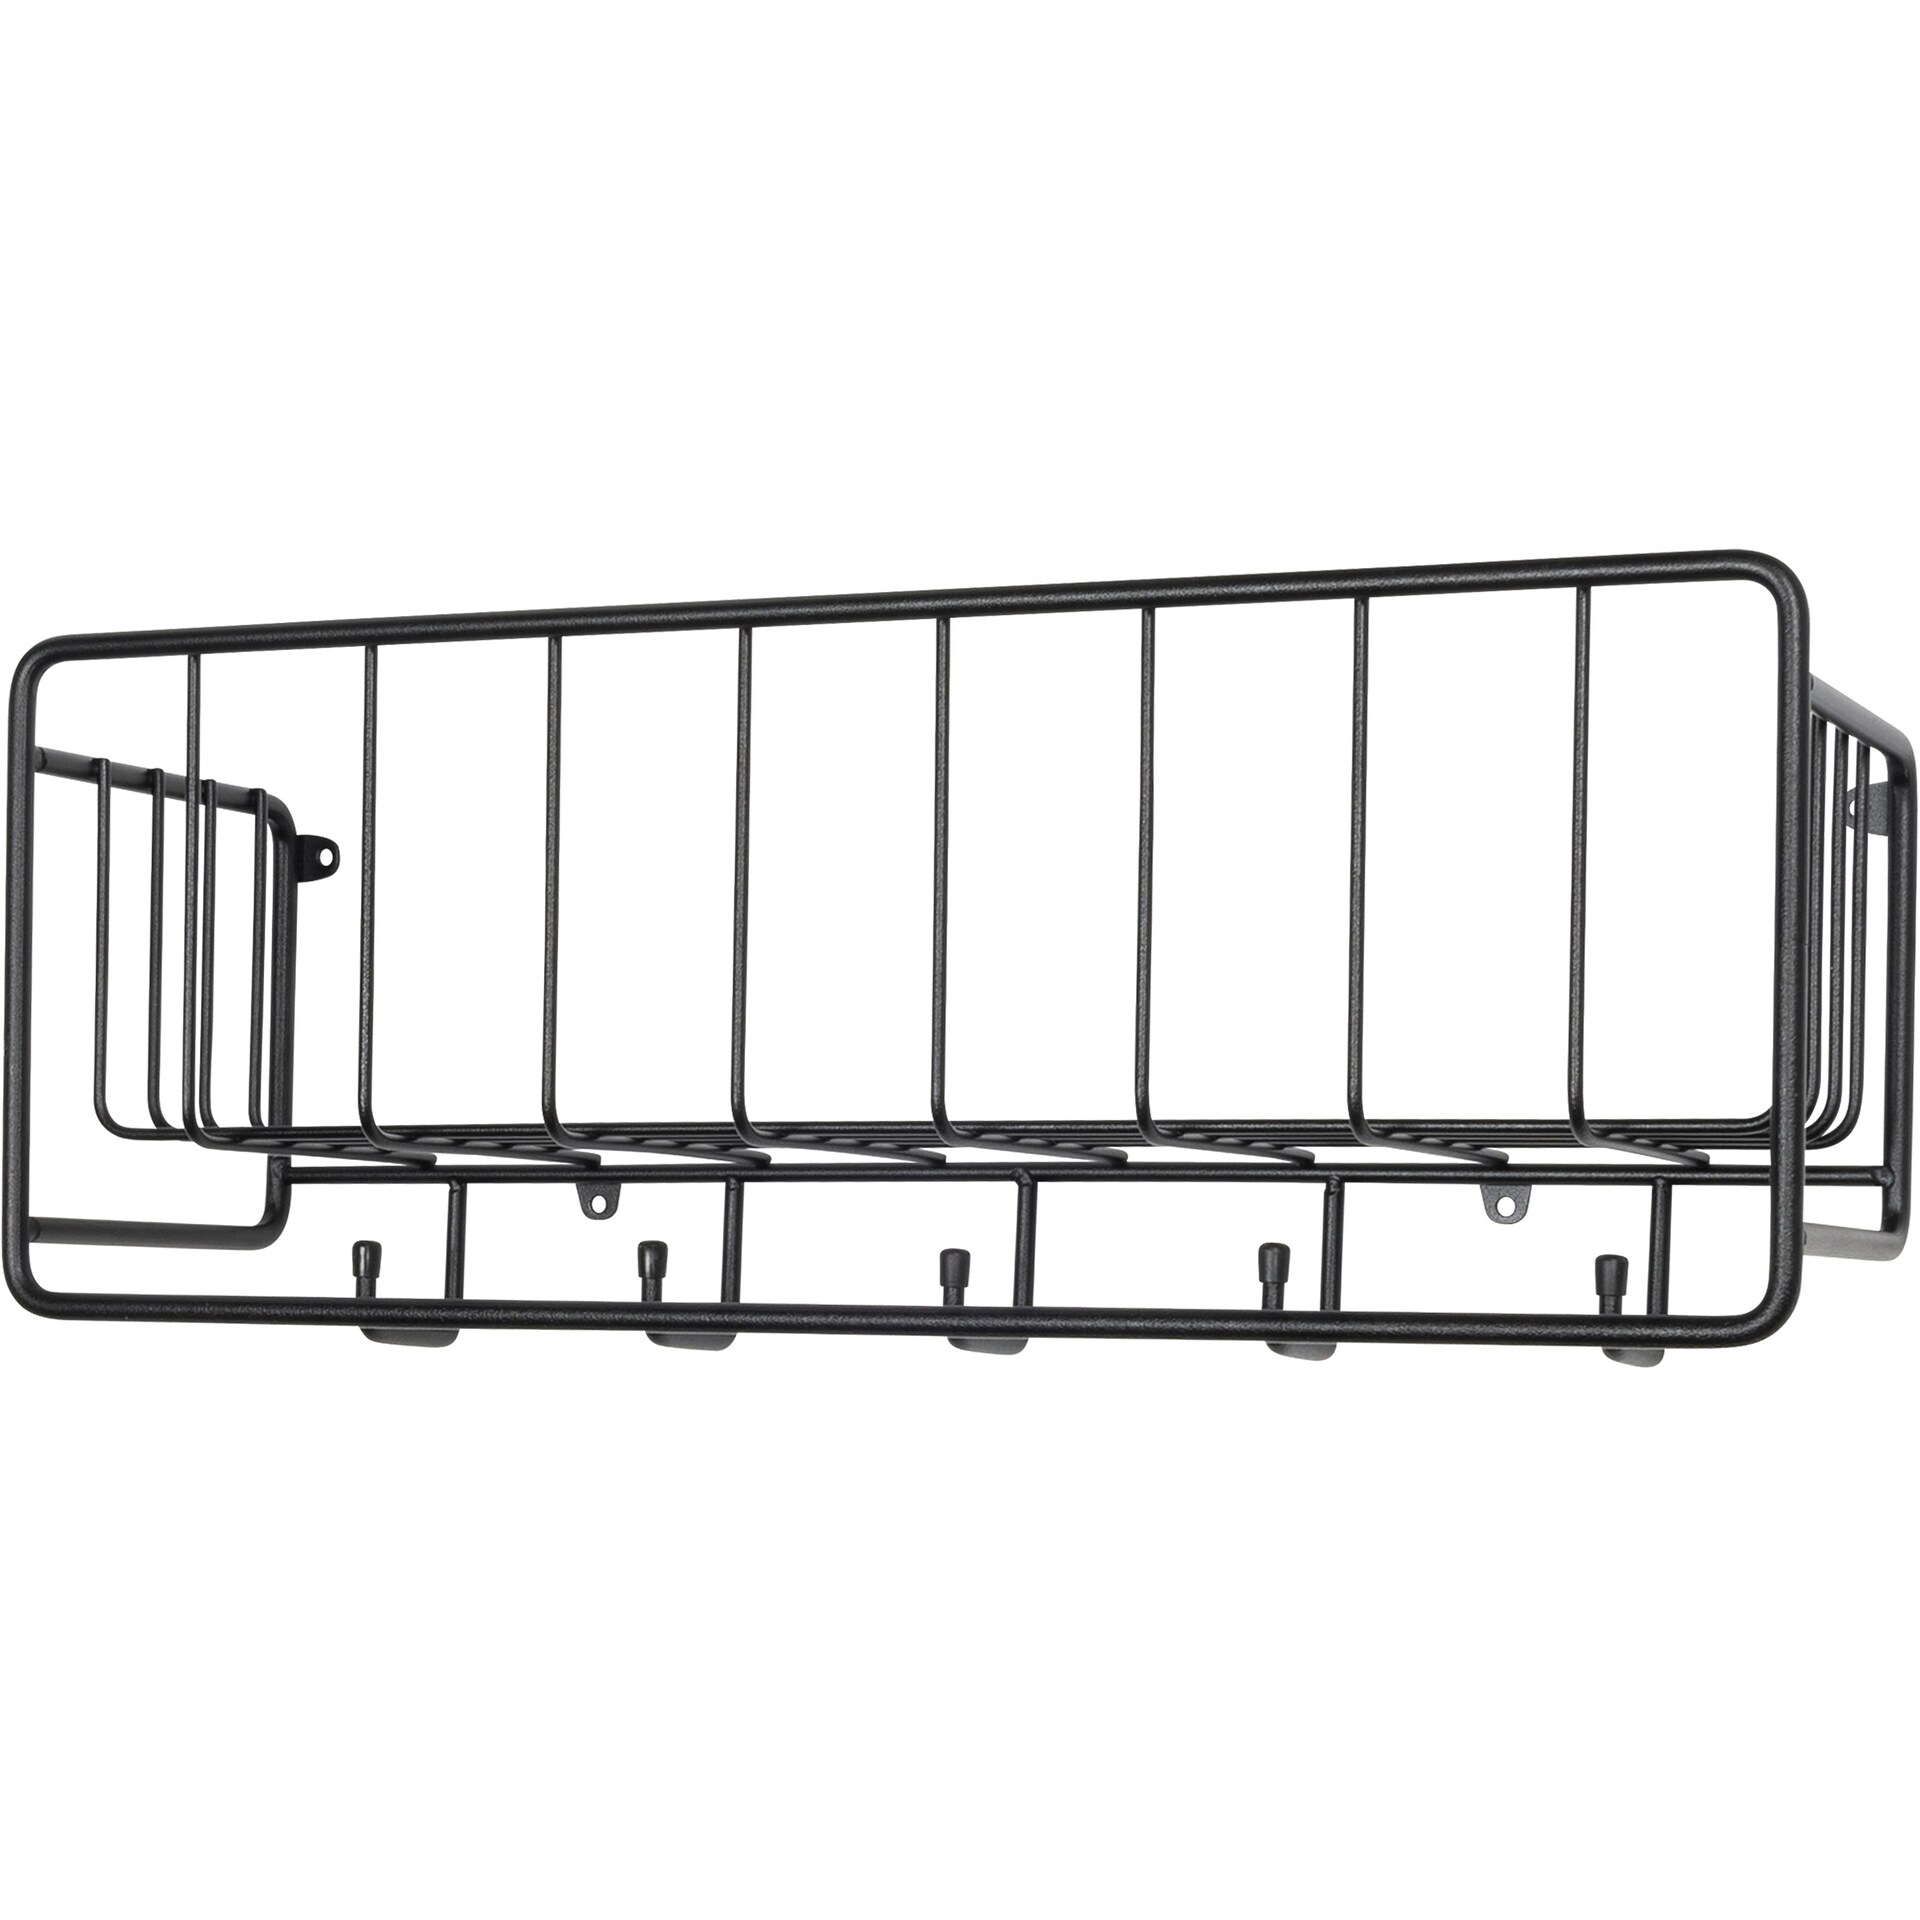 https://royaldesign.com/image/2/maze-midtown-shelf-50-cm-0